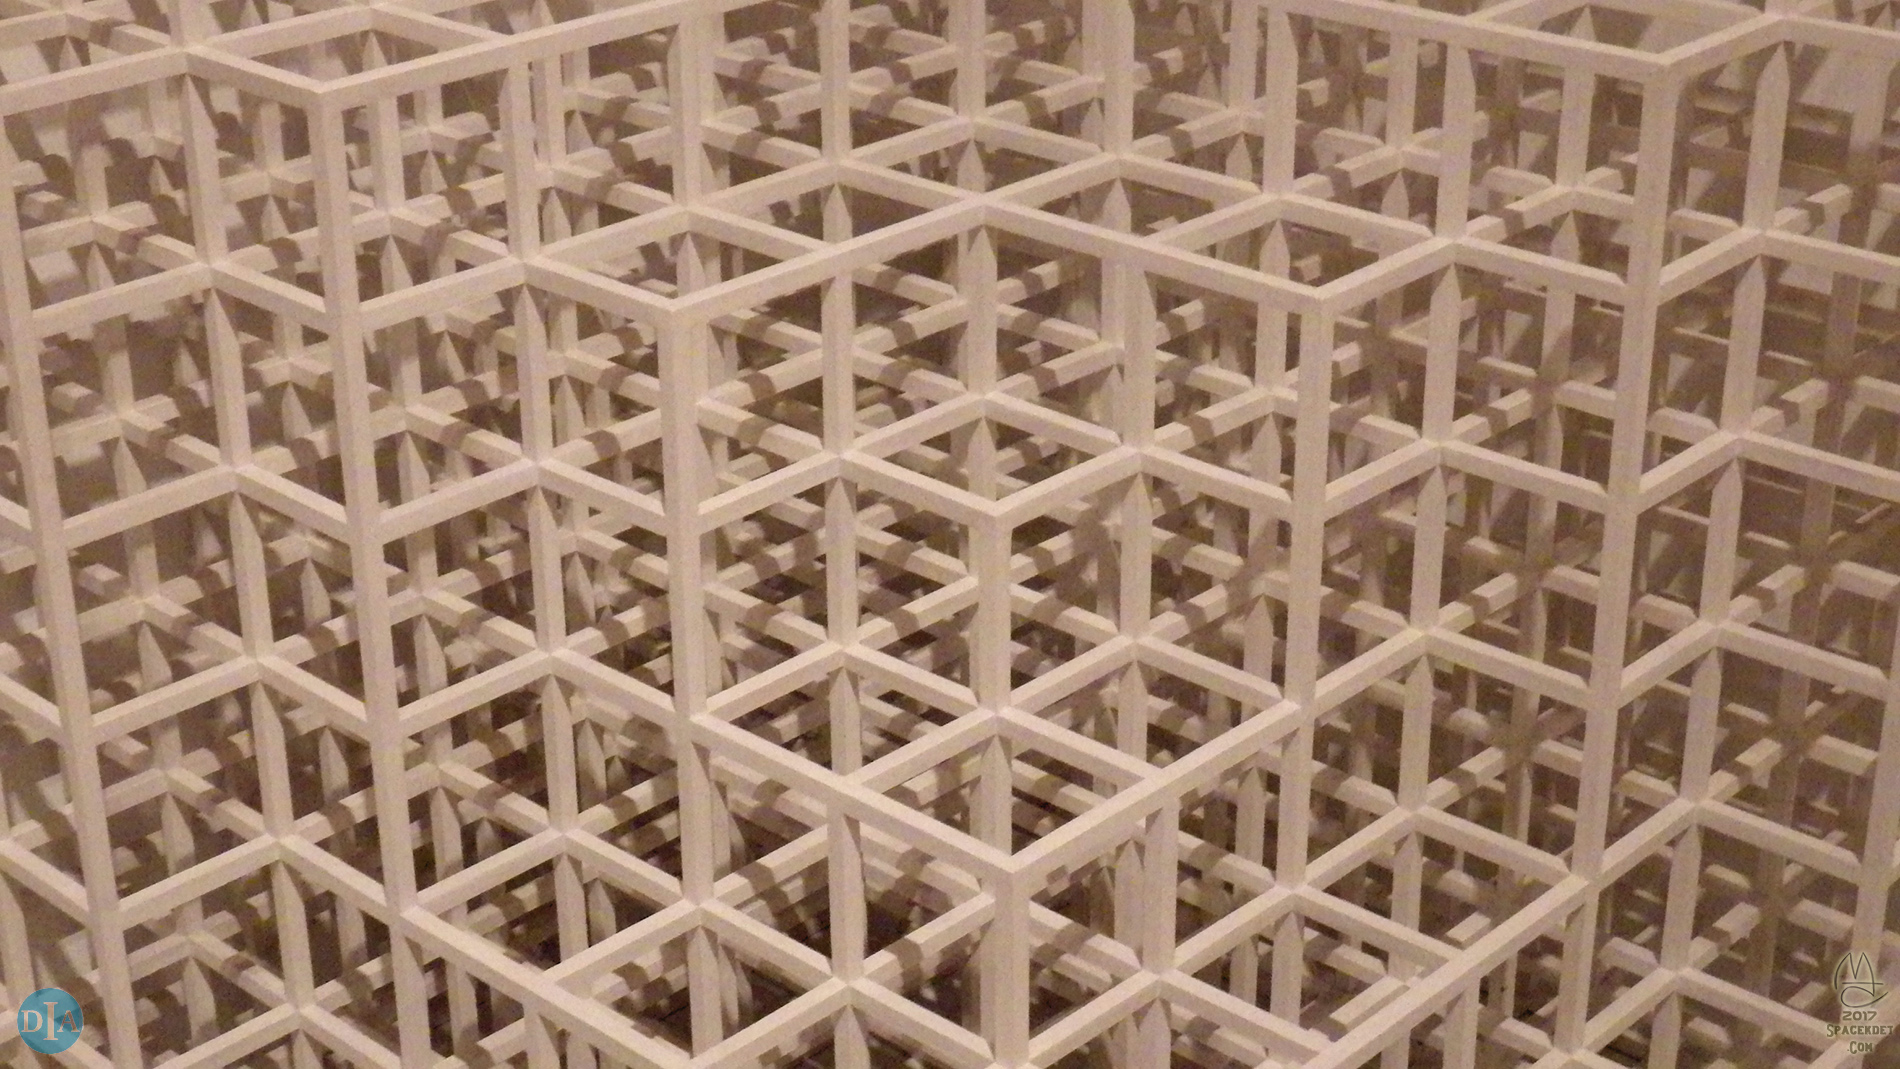 Modular Open Cube Pieces, Floor-Corner 2; Sol LeWitt, 1976.